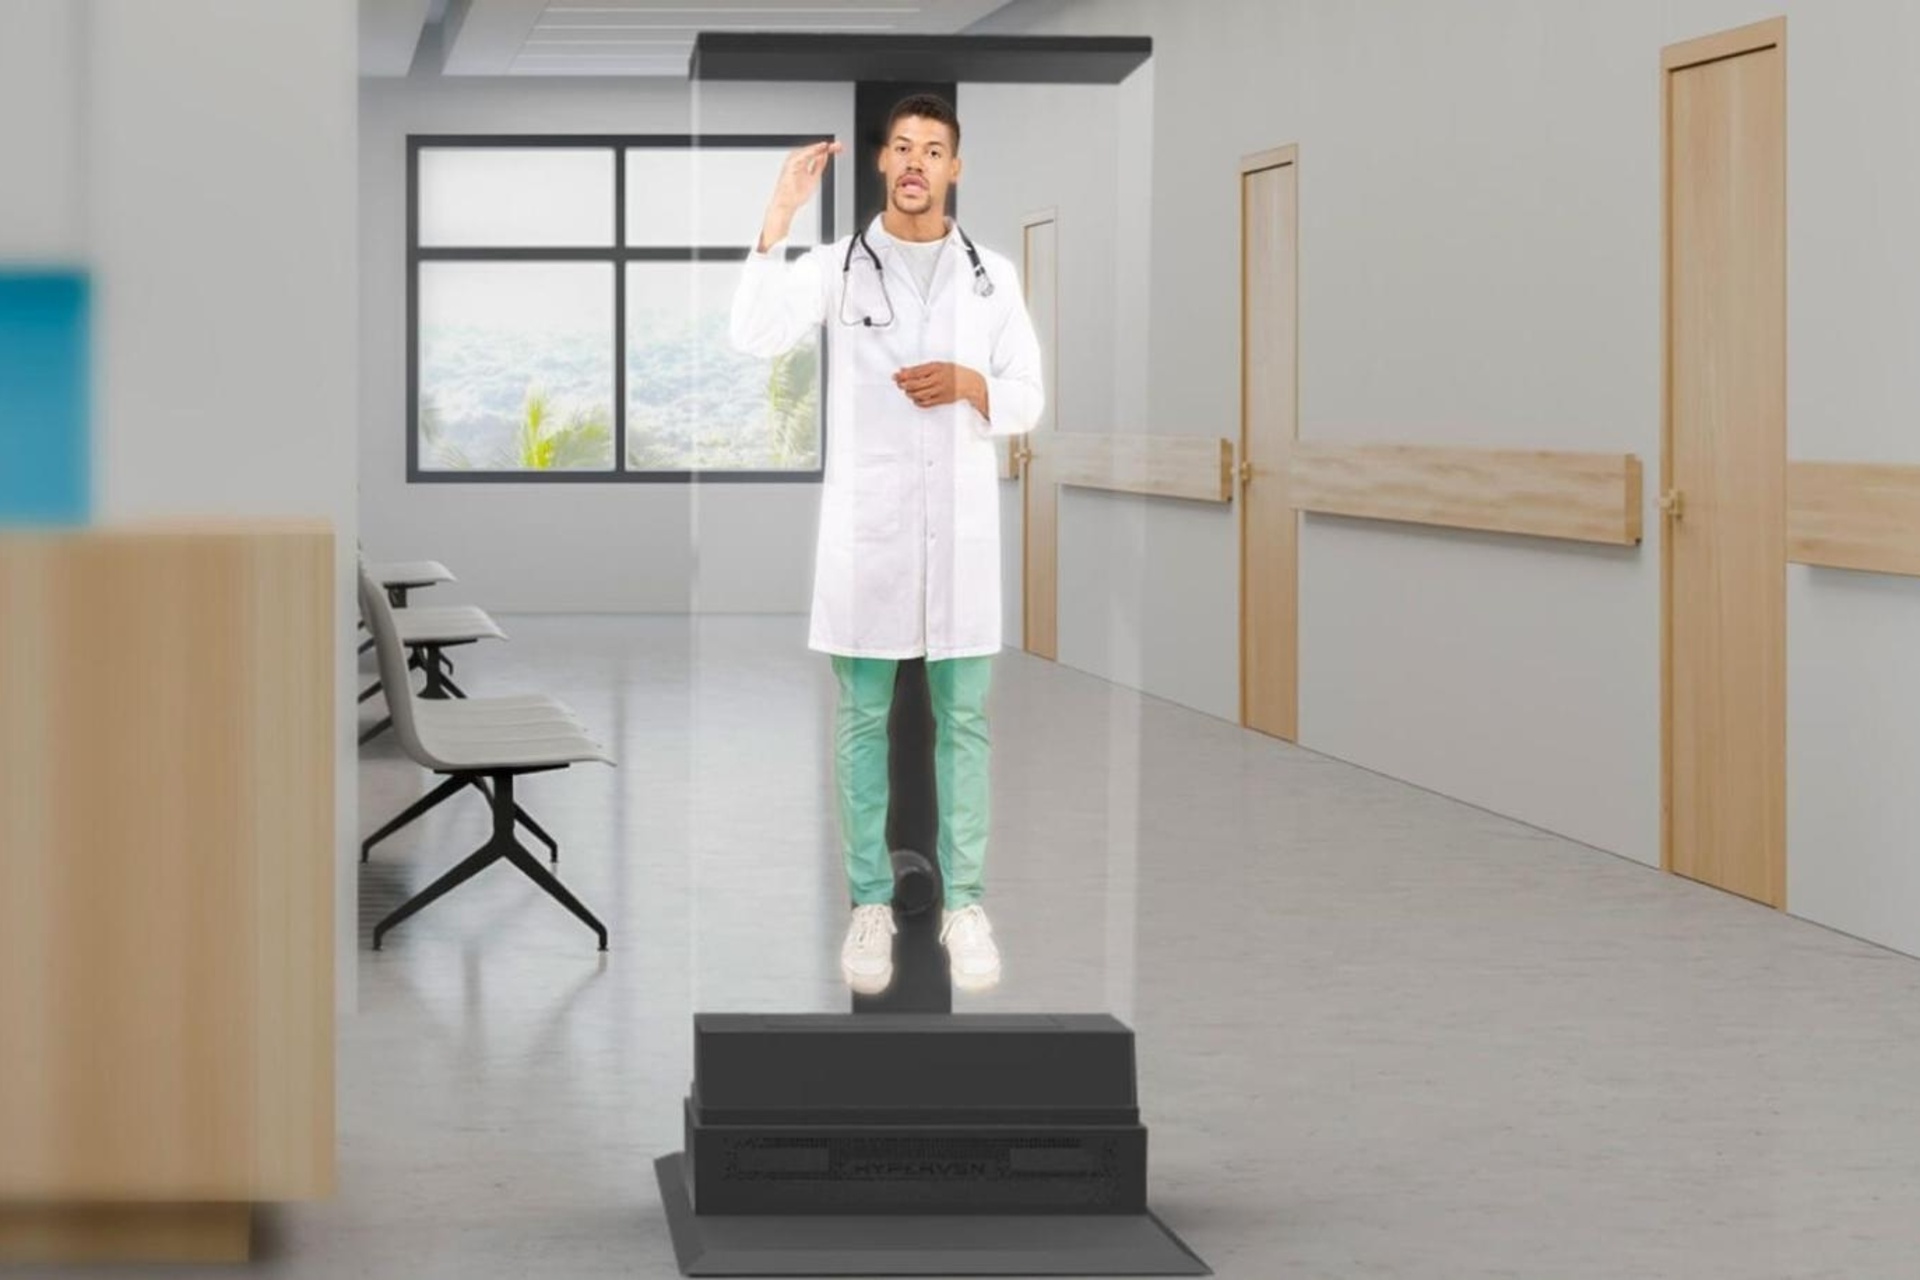 Holograme: datorită avatarurilor și tehnologiilor AI, este imaginabilă o democratizare a accesului la îngrijirea medicală